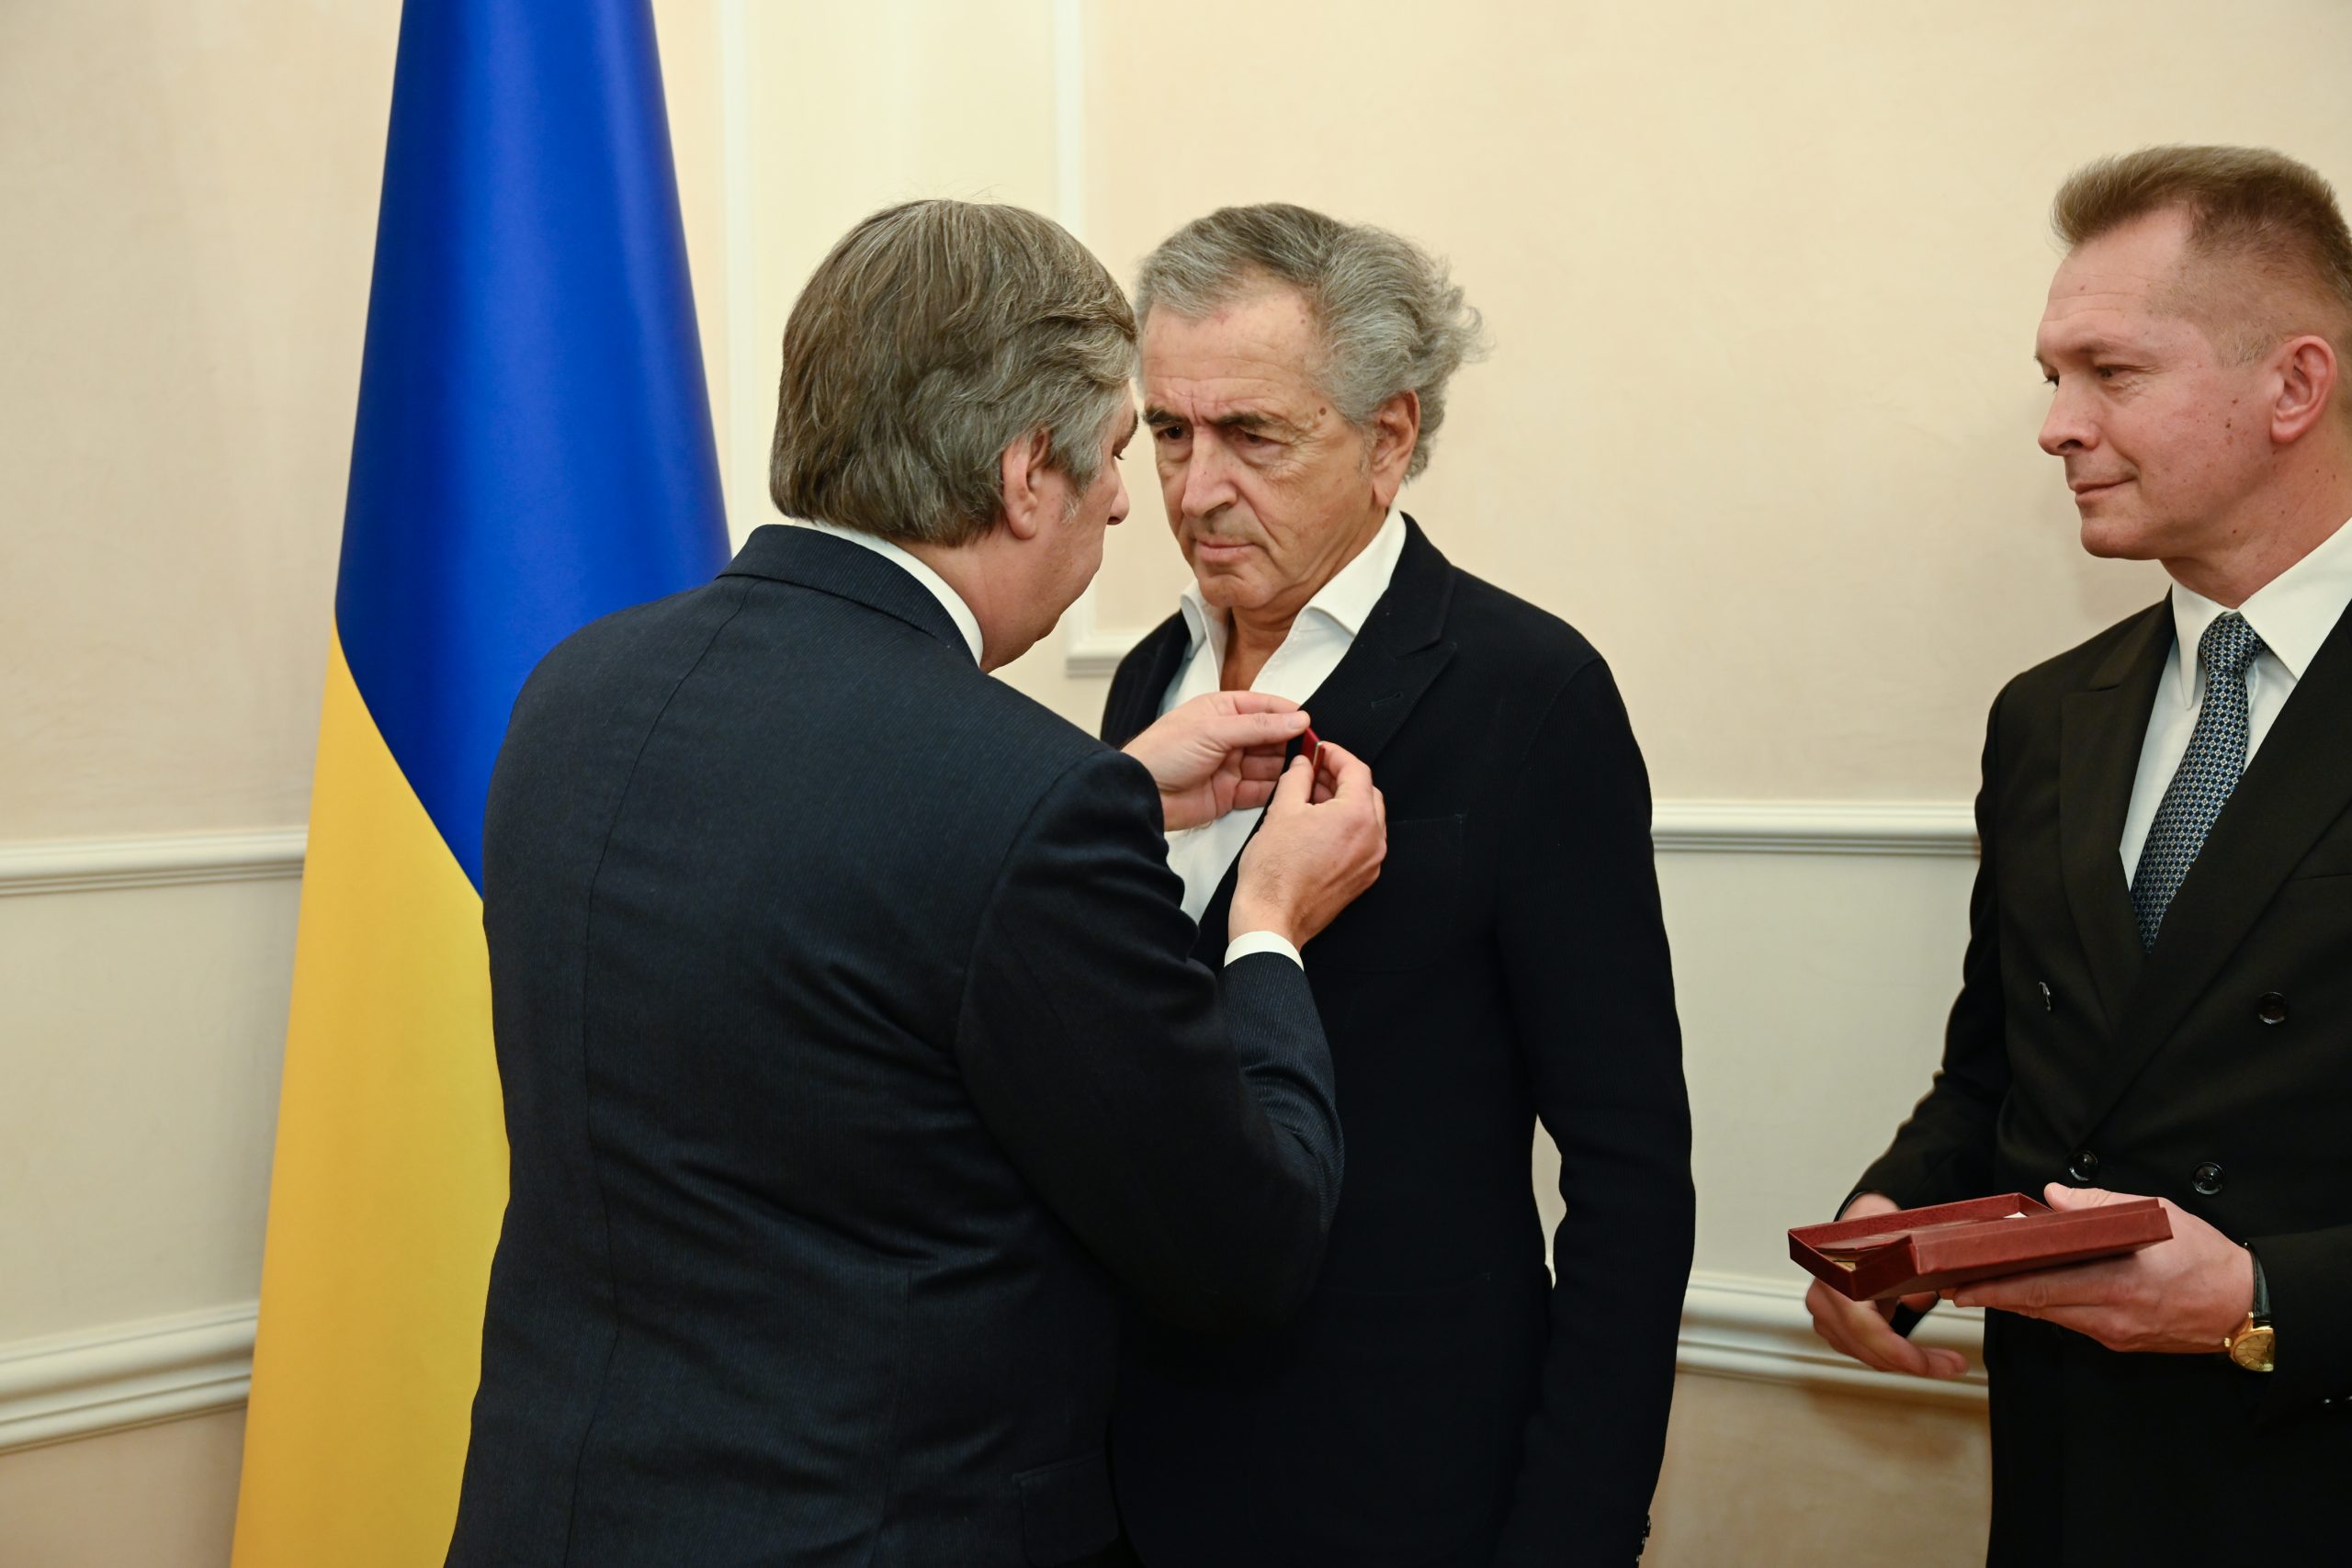 Vadym Omelchenko, ambassadeur d'Ukraine en France, remet l'insigne de Chevalier de l'Ordre du Mérite d'Ukraine à Bernard-Henri Lévy.